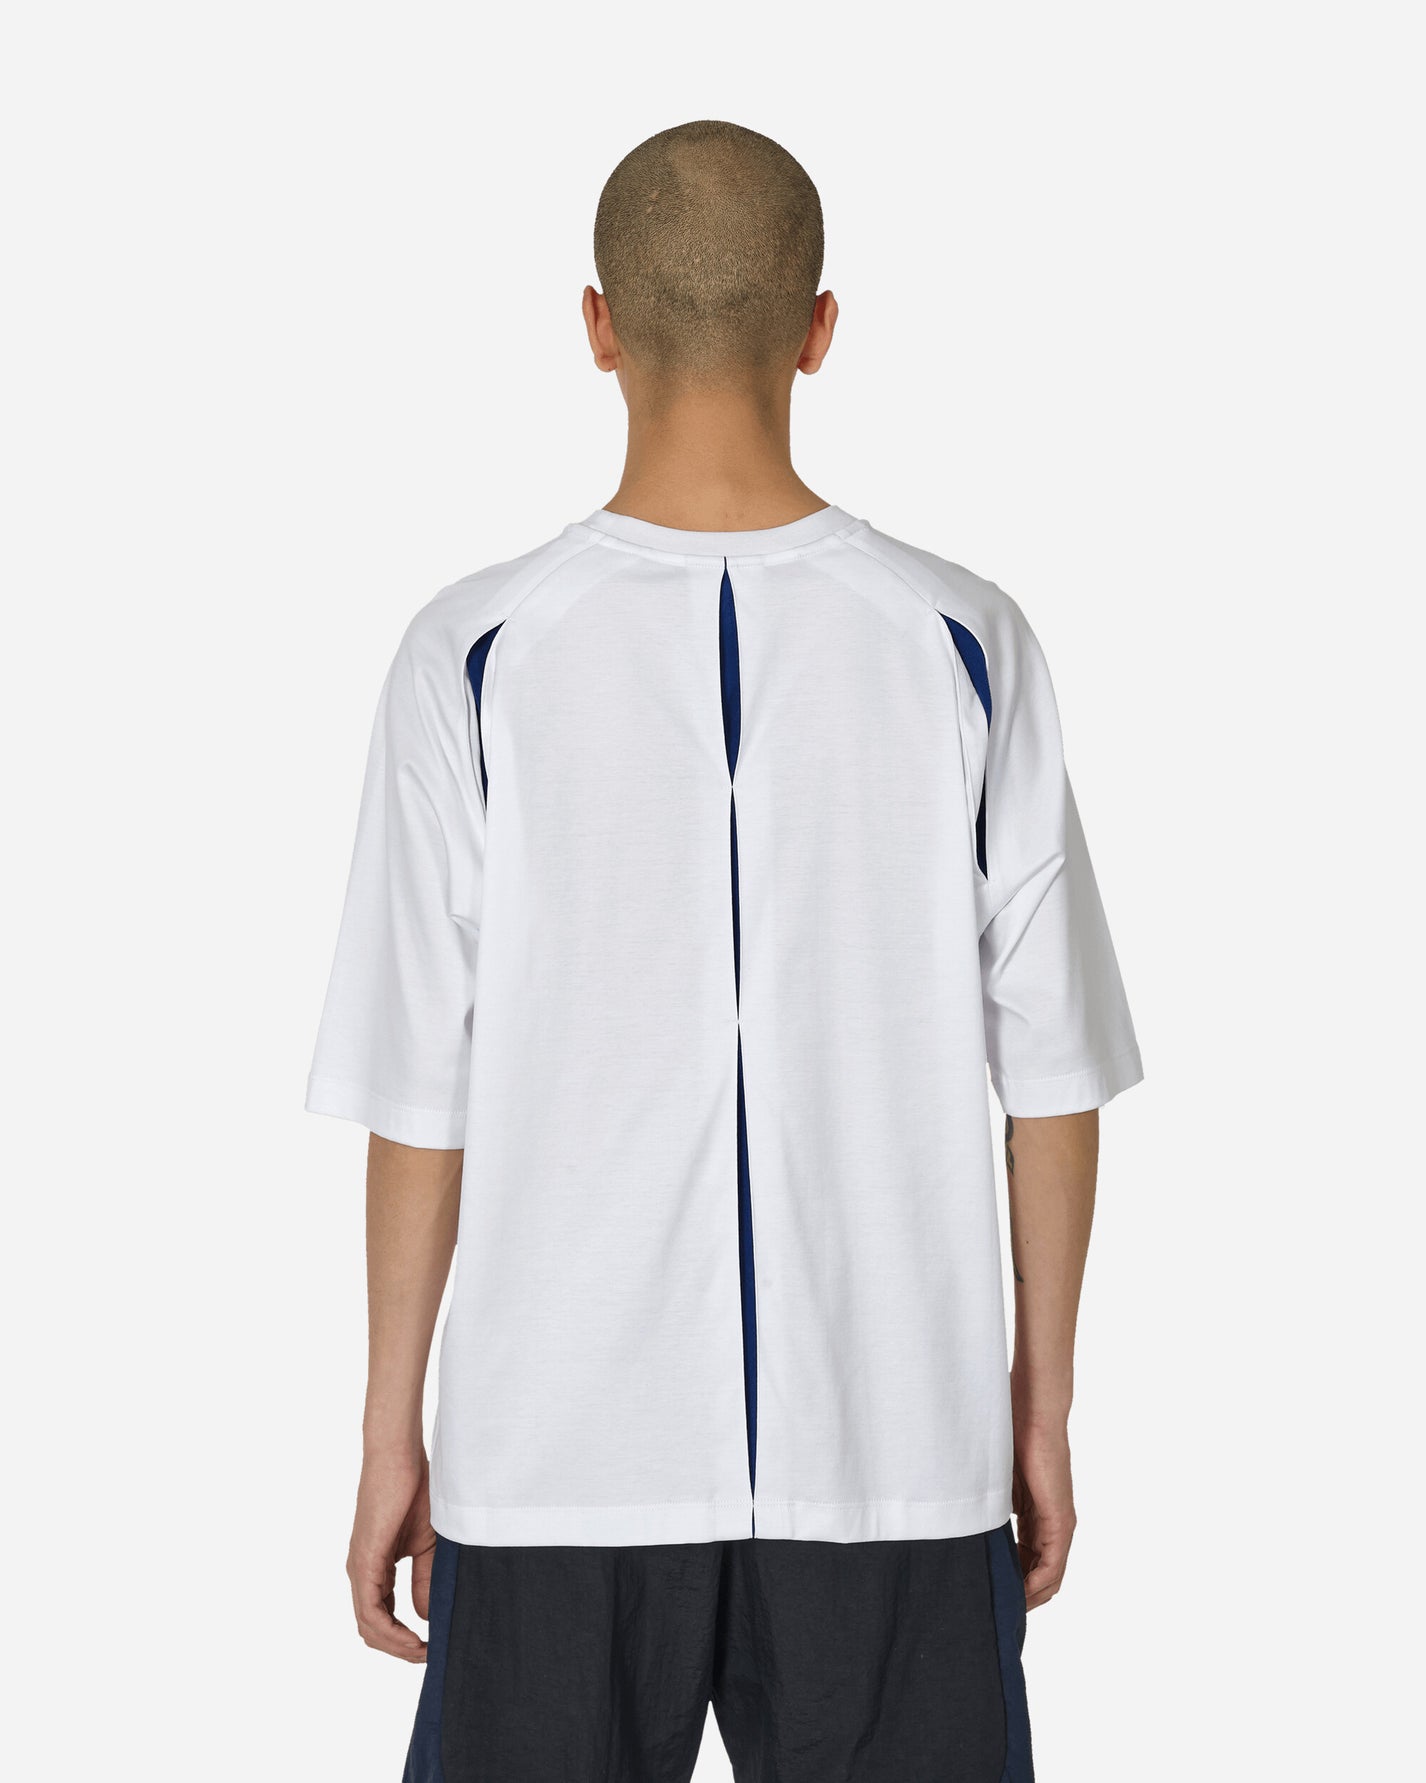 _J.L-A.L_ Bellow T-Shirt Brigth Blue Bright White T-Shirts Top JBMW057FA49 WTH0006